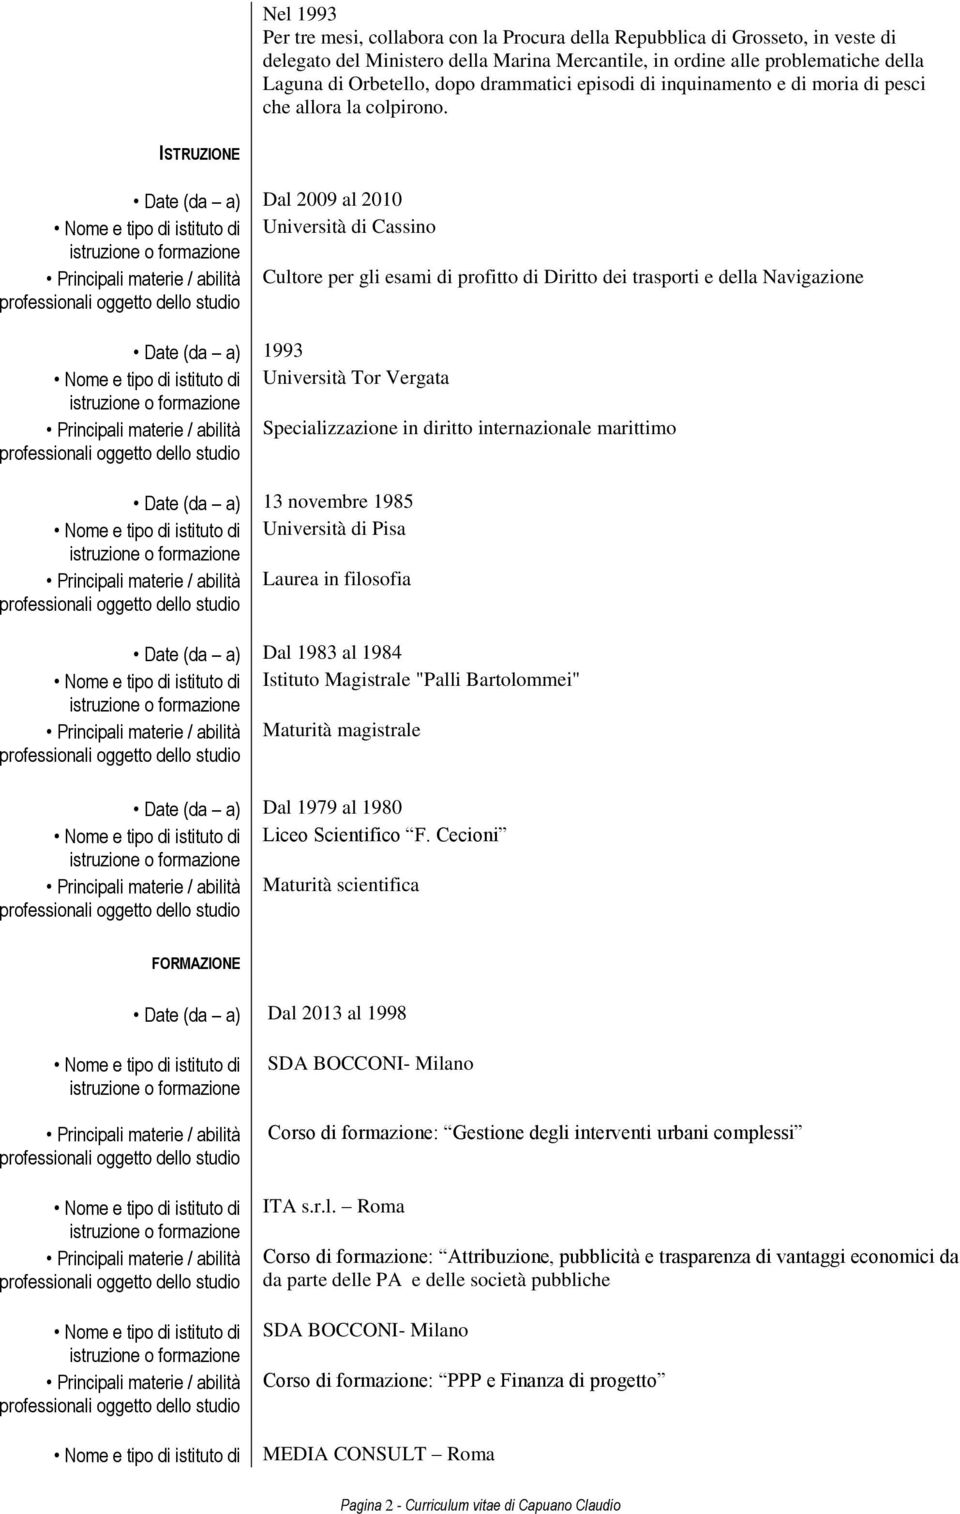 ISTRUZIONE Date (da a) Dal 2009 al 2010 Università di Cassino Cultore per gli esami di profitto di Diritto dei trasporti e della Navigazione Date (da a) 1993 Università Tor Vergata Specializzazione